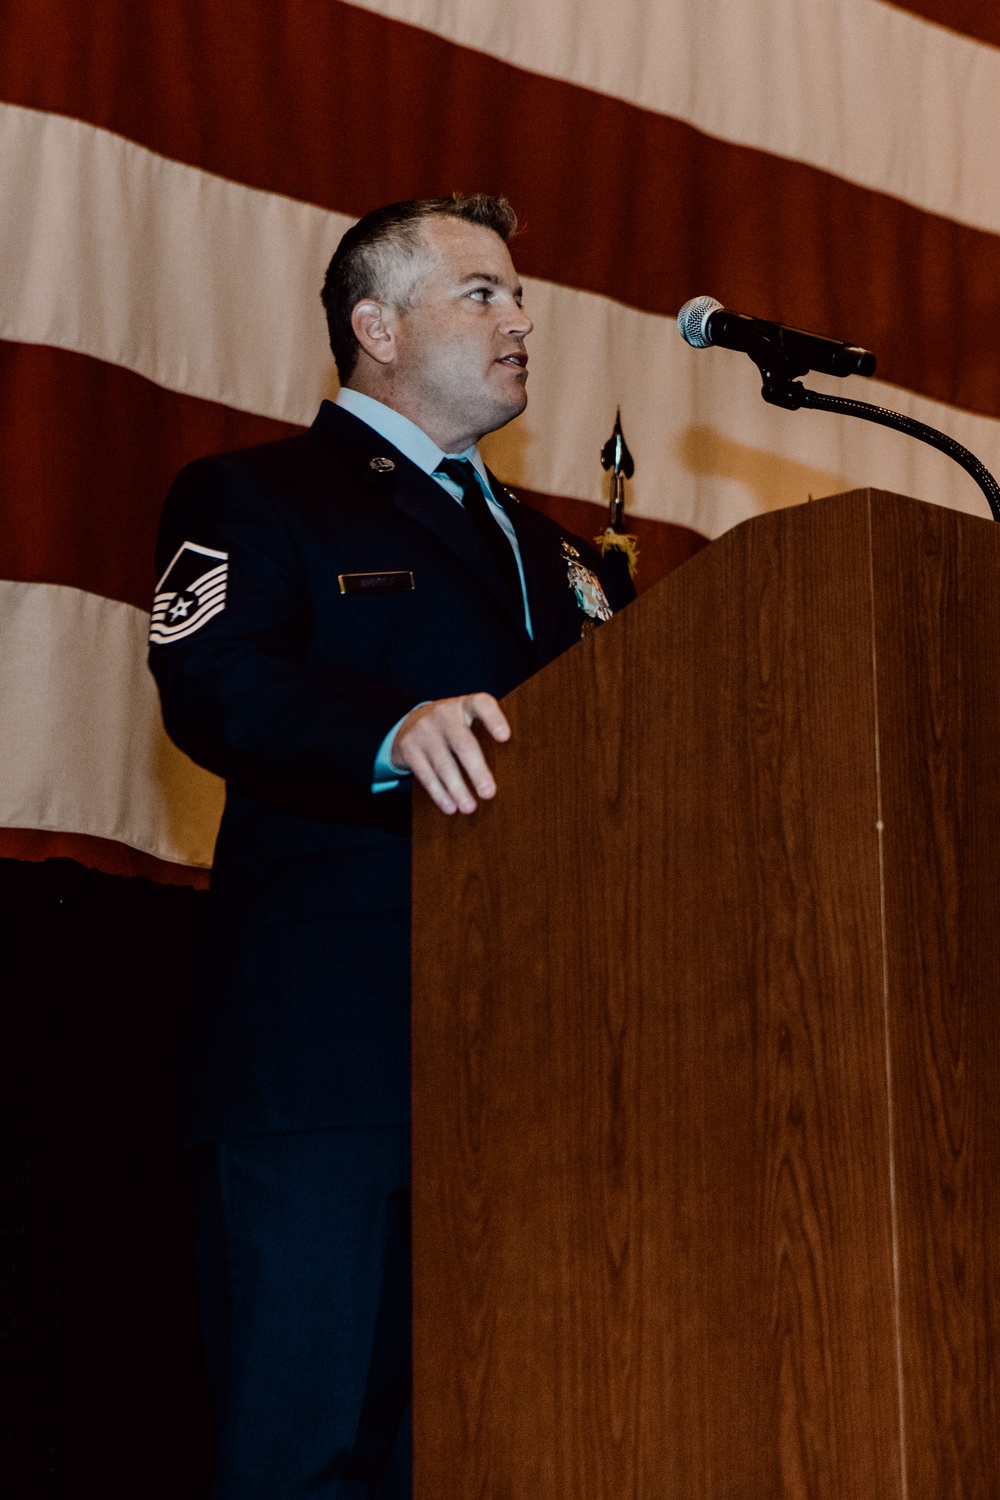 Oklahoma Air National Guardsman receives Airman’s Medal